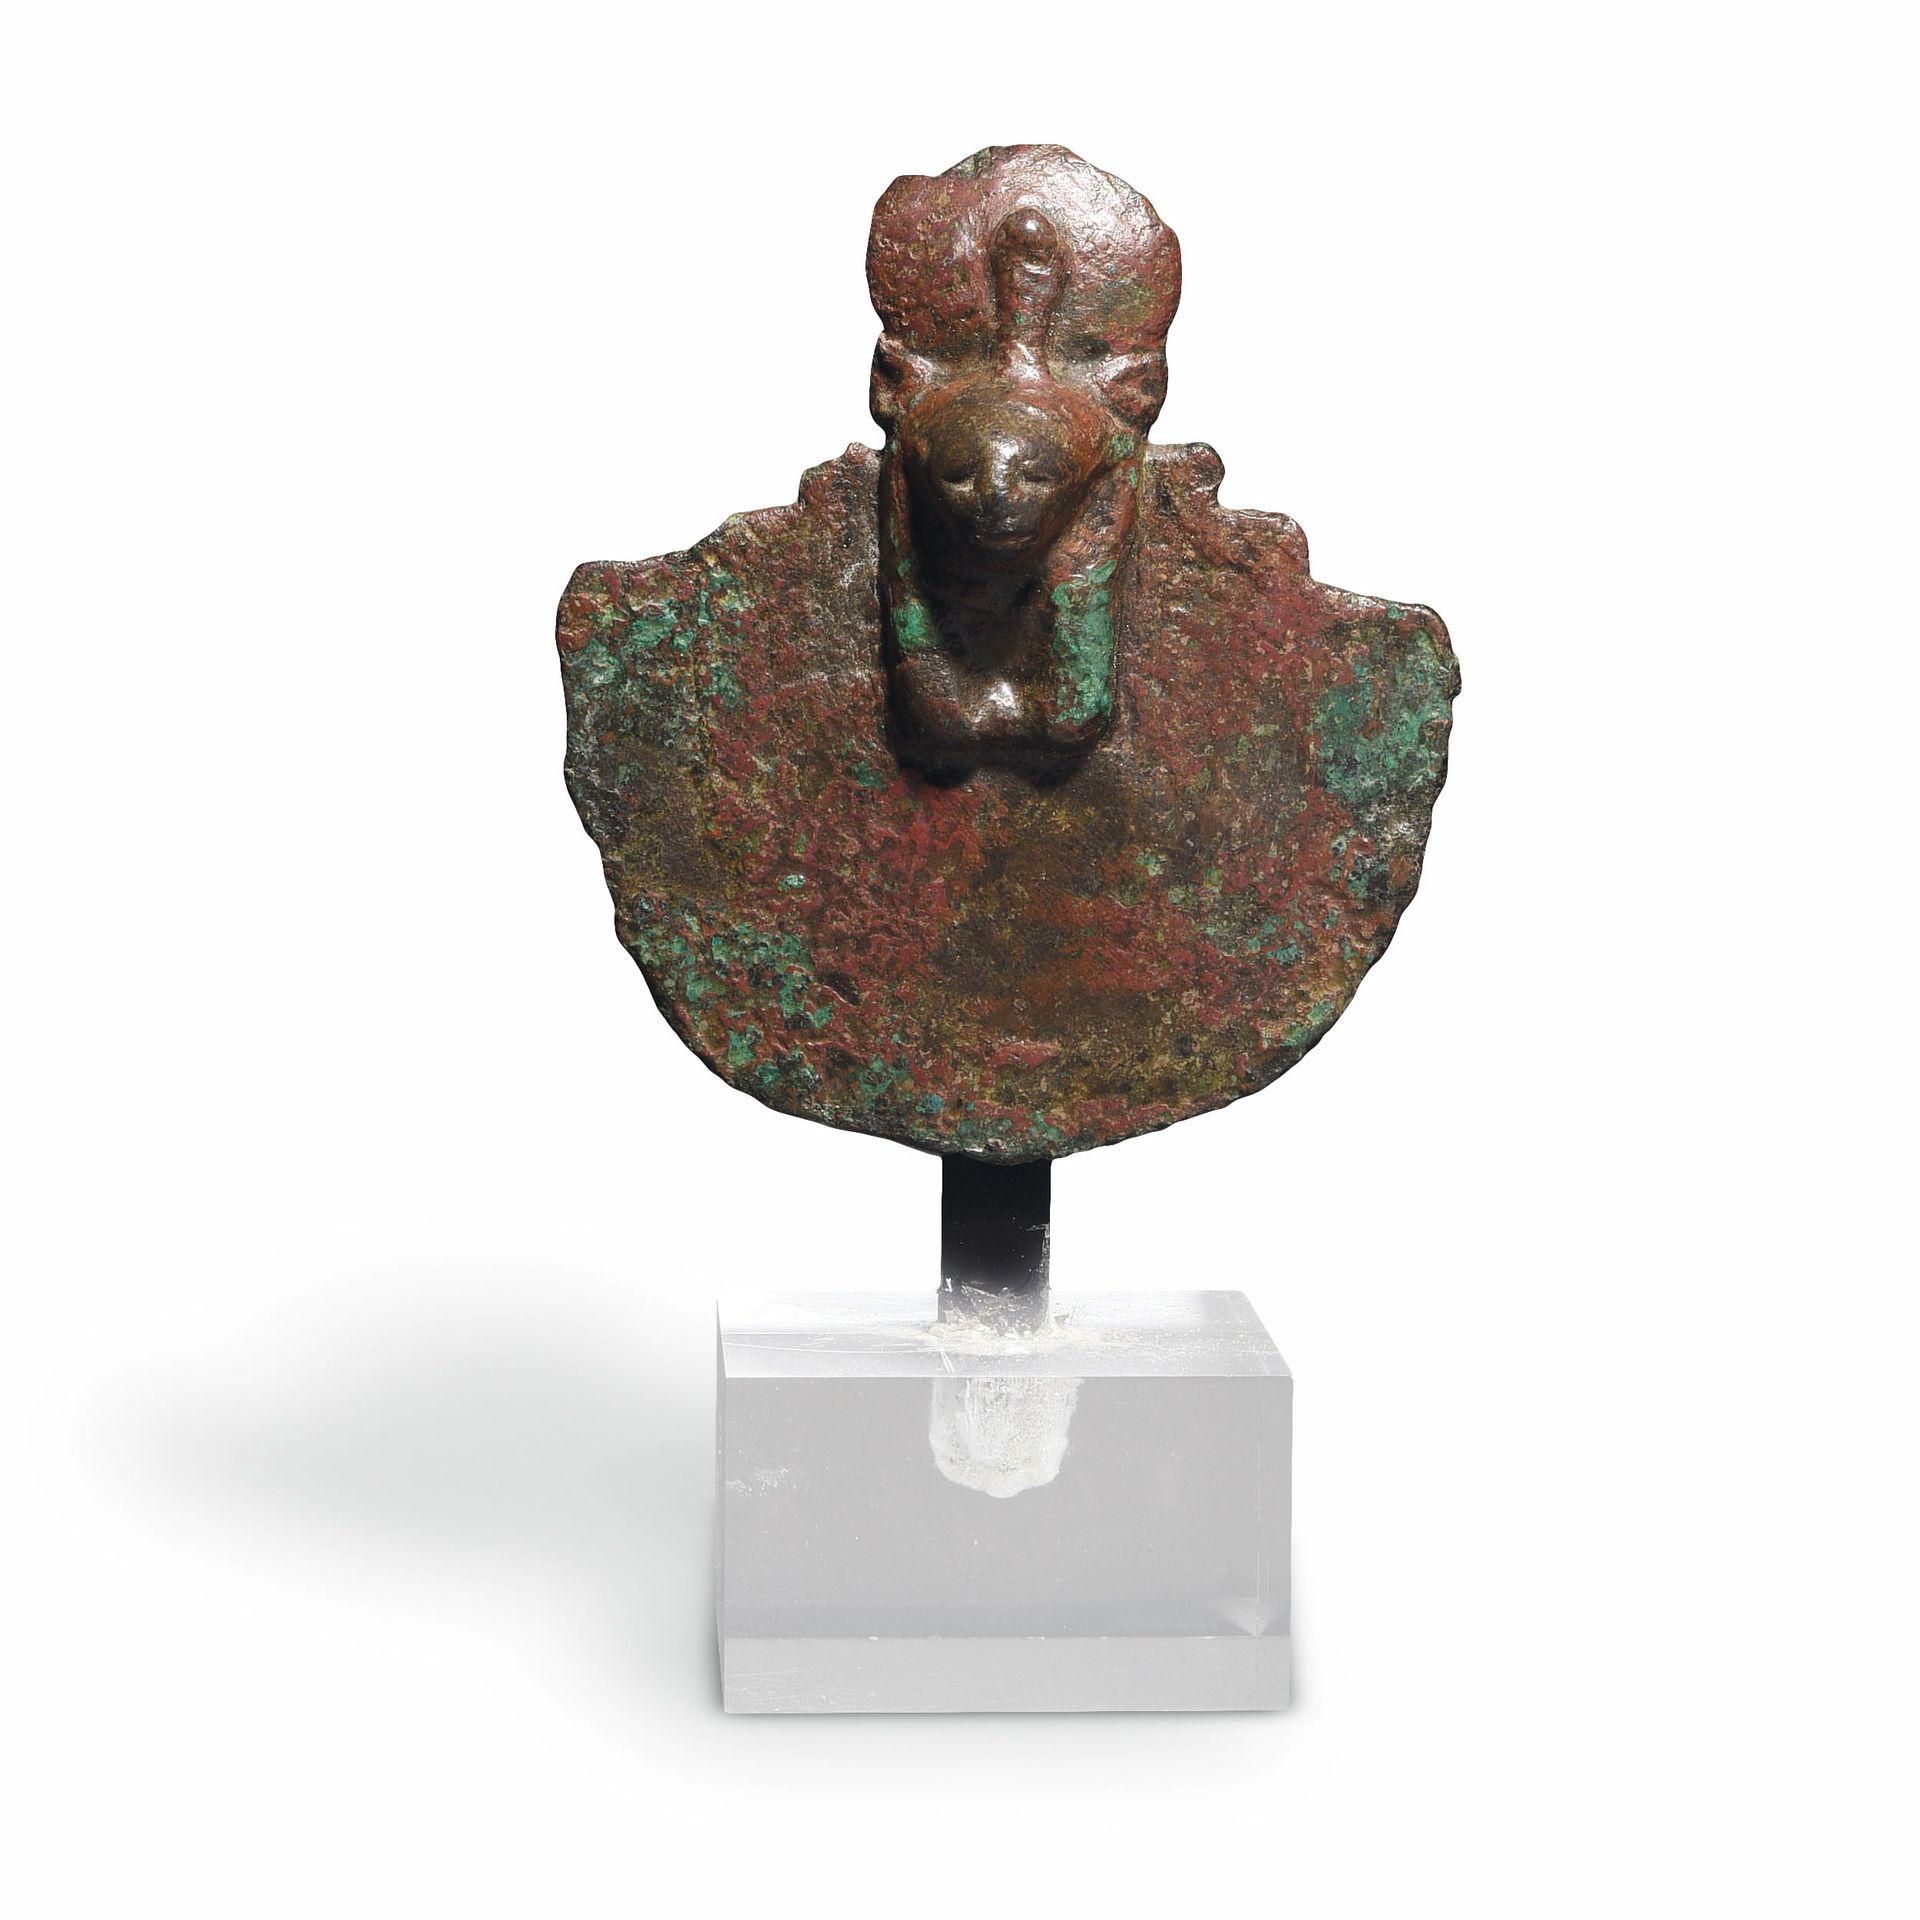 Null 塞克迈特的护卫

埃及，晚期，公元前664-332年

带有绿色和红色铜锈的青铜器

高约10厘米



出处

法国私人收藏和遗产



一件晚期的&hellip;